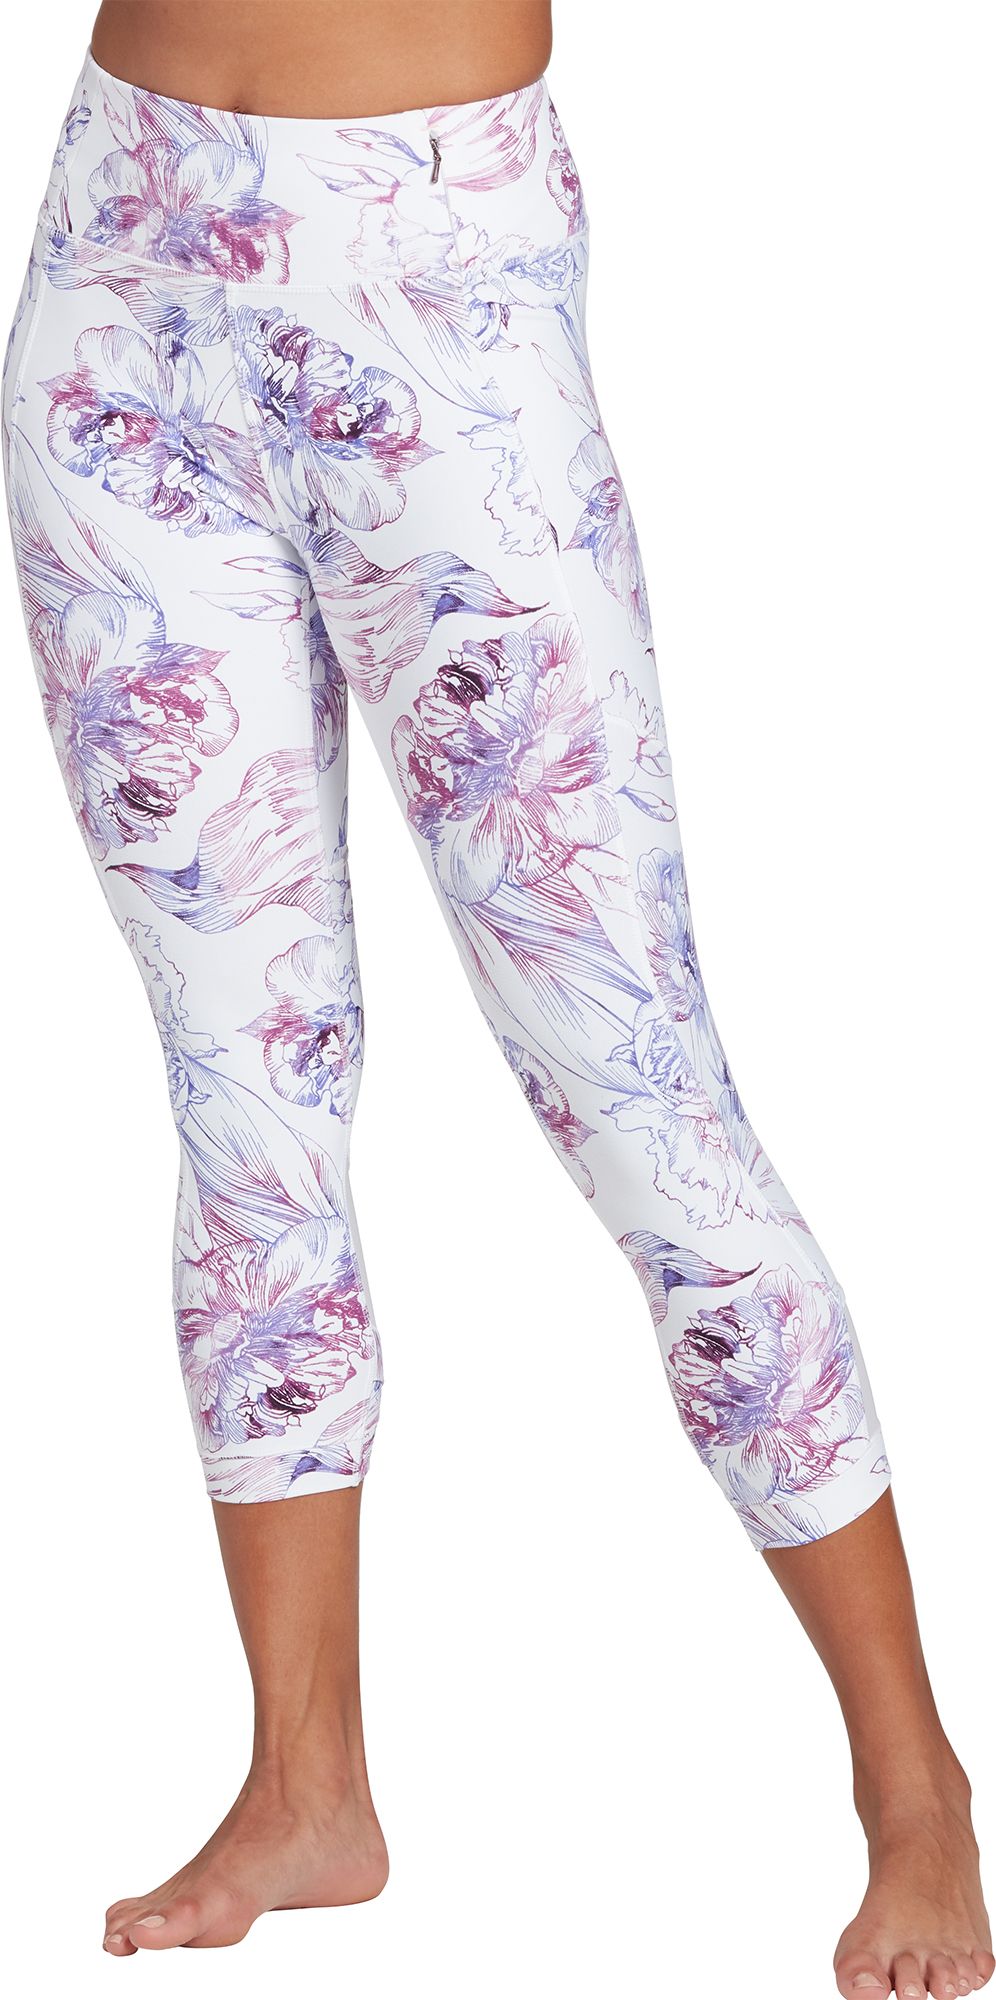 Yoga Pants for Women | Best Price Guarantee at DICK'S